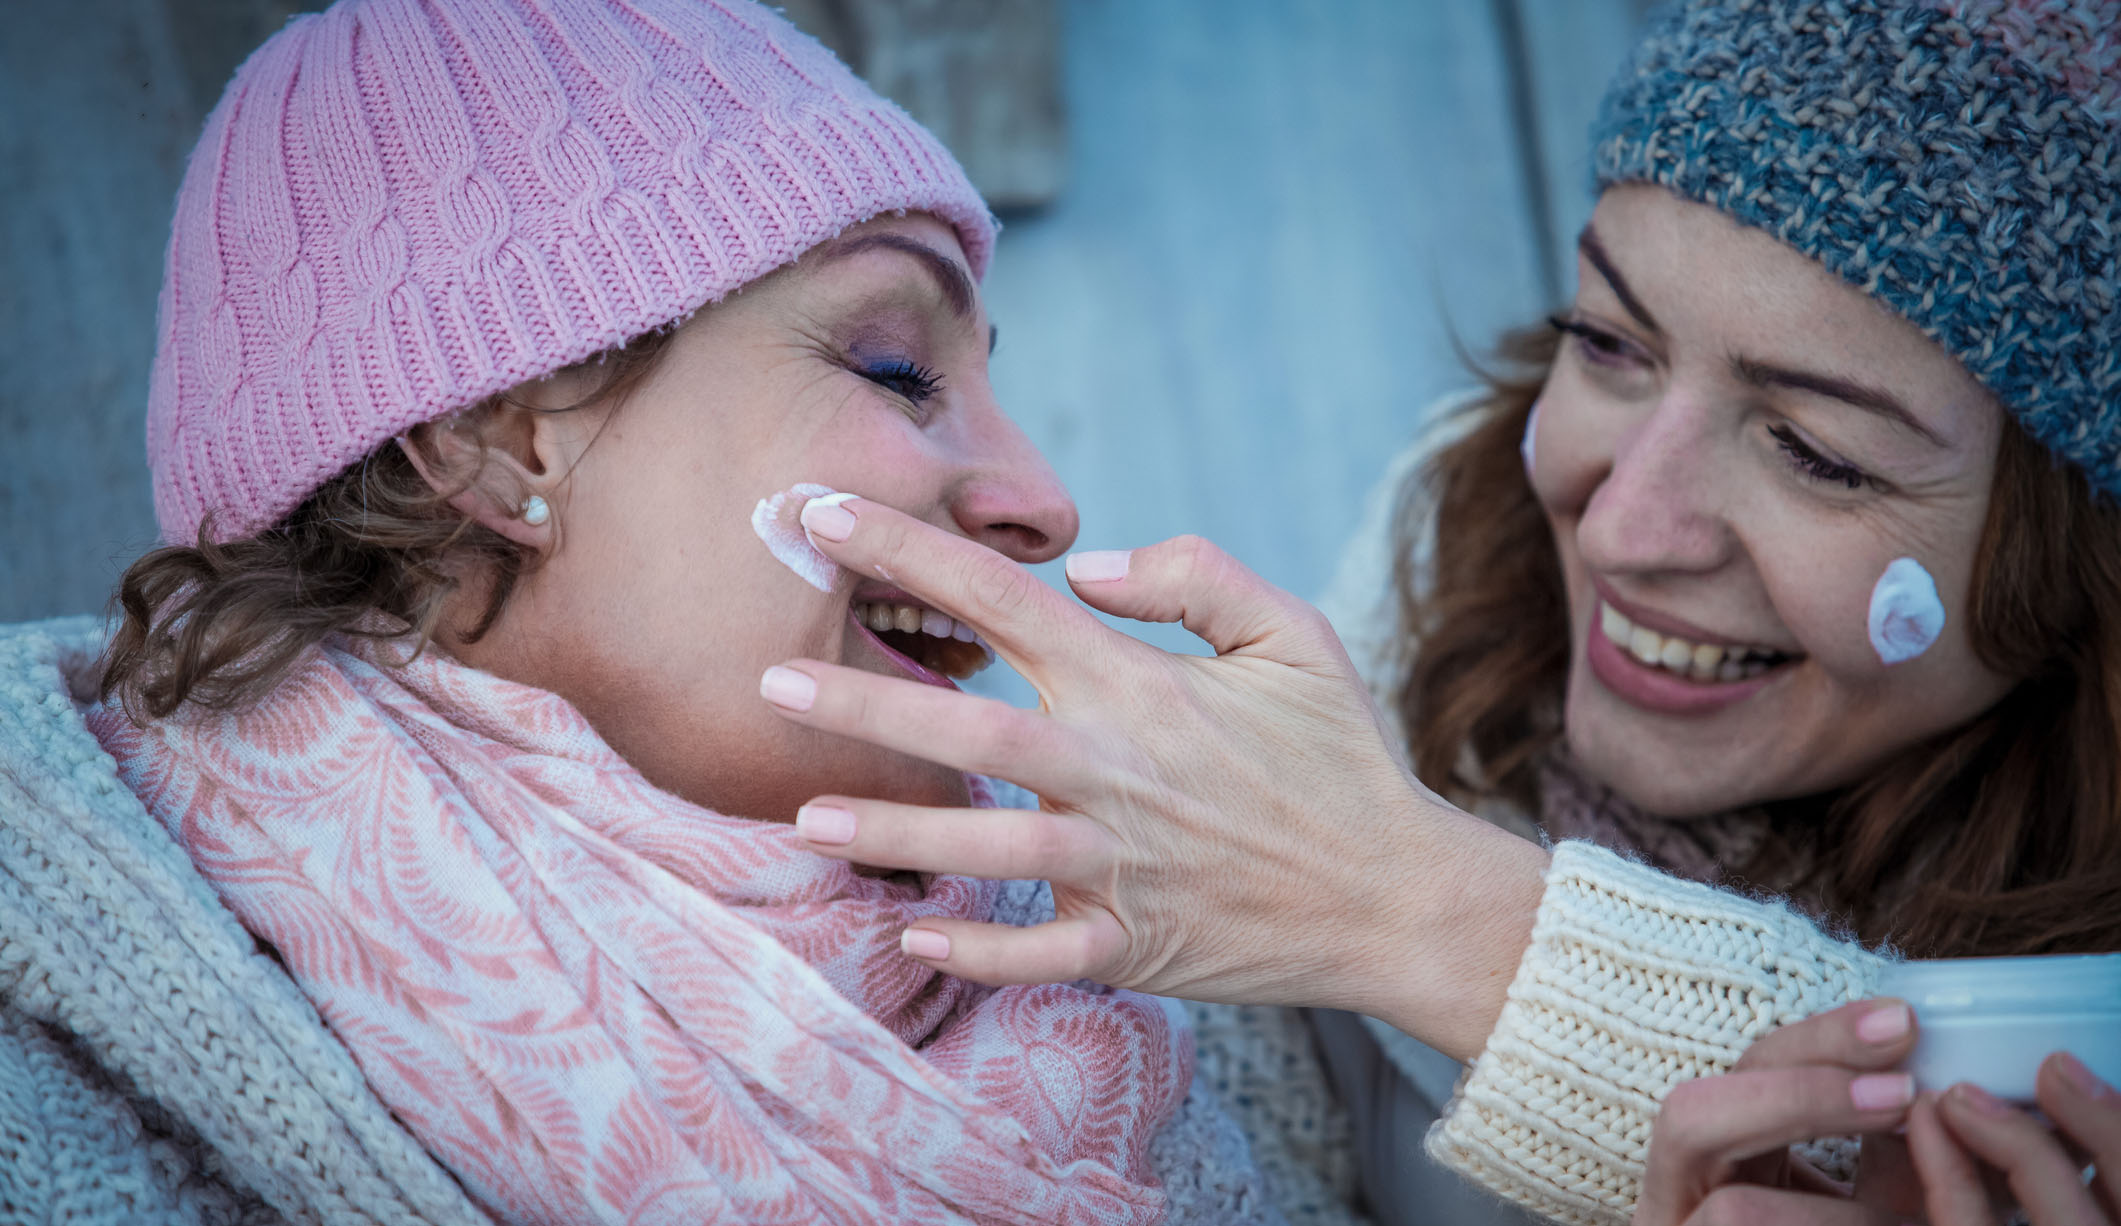 Dos mujeres se echan crema para protegerse del frío